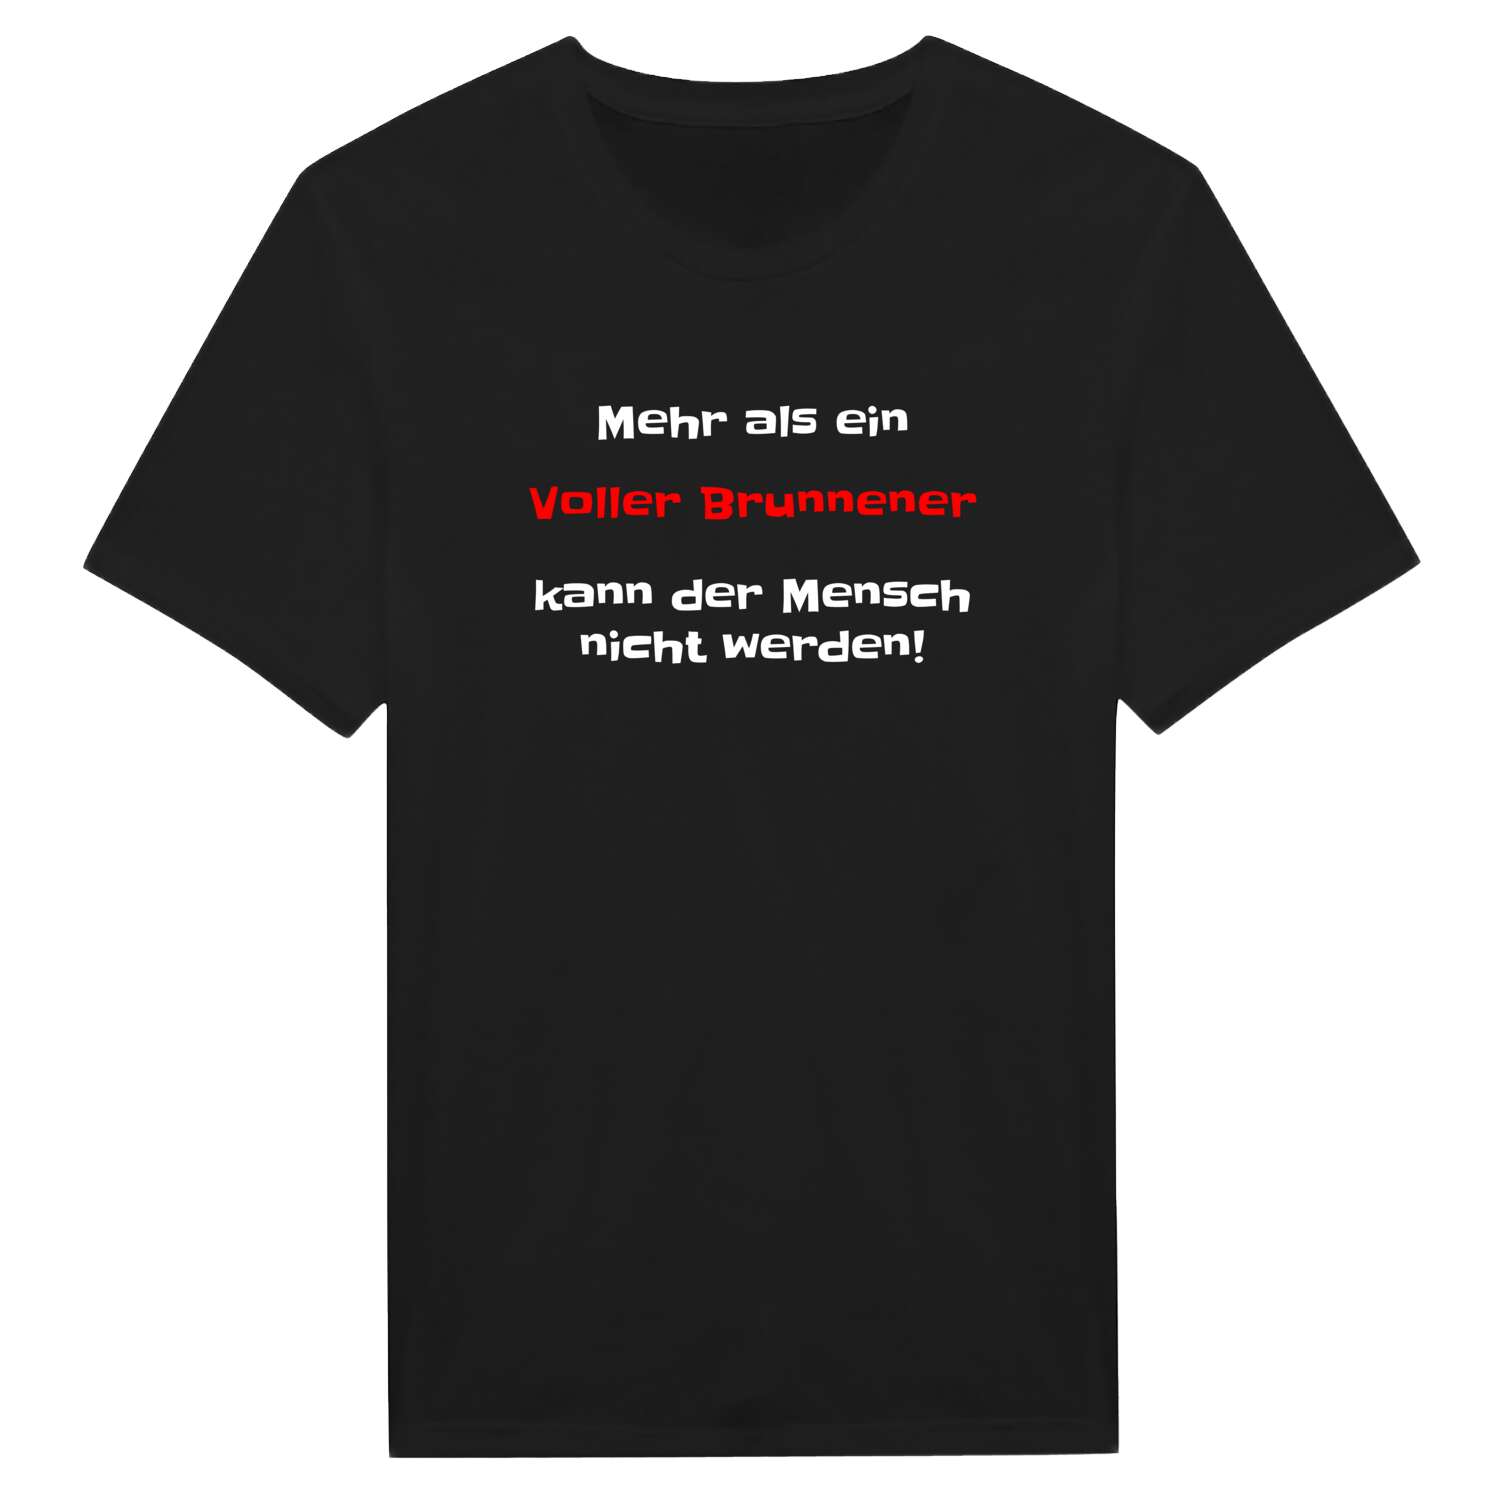 Voller Brunnen T-Shirt »Mehr als ein«